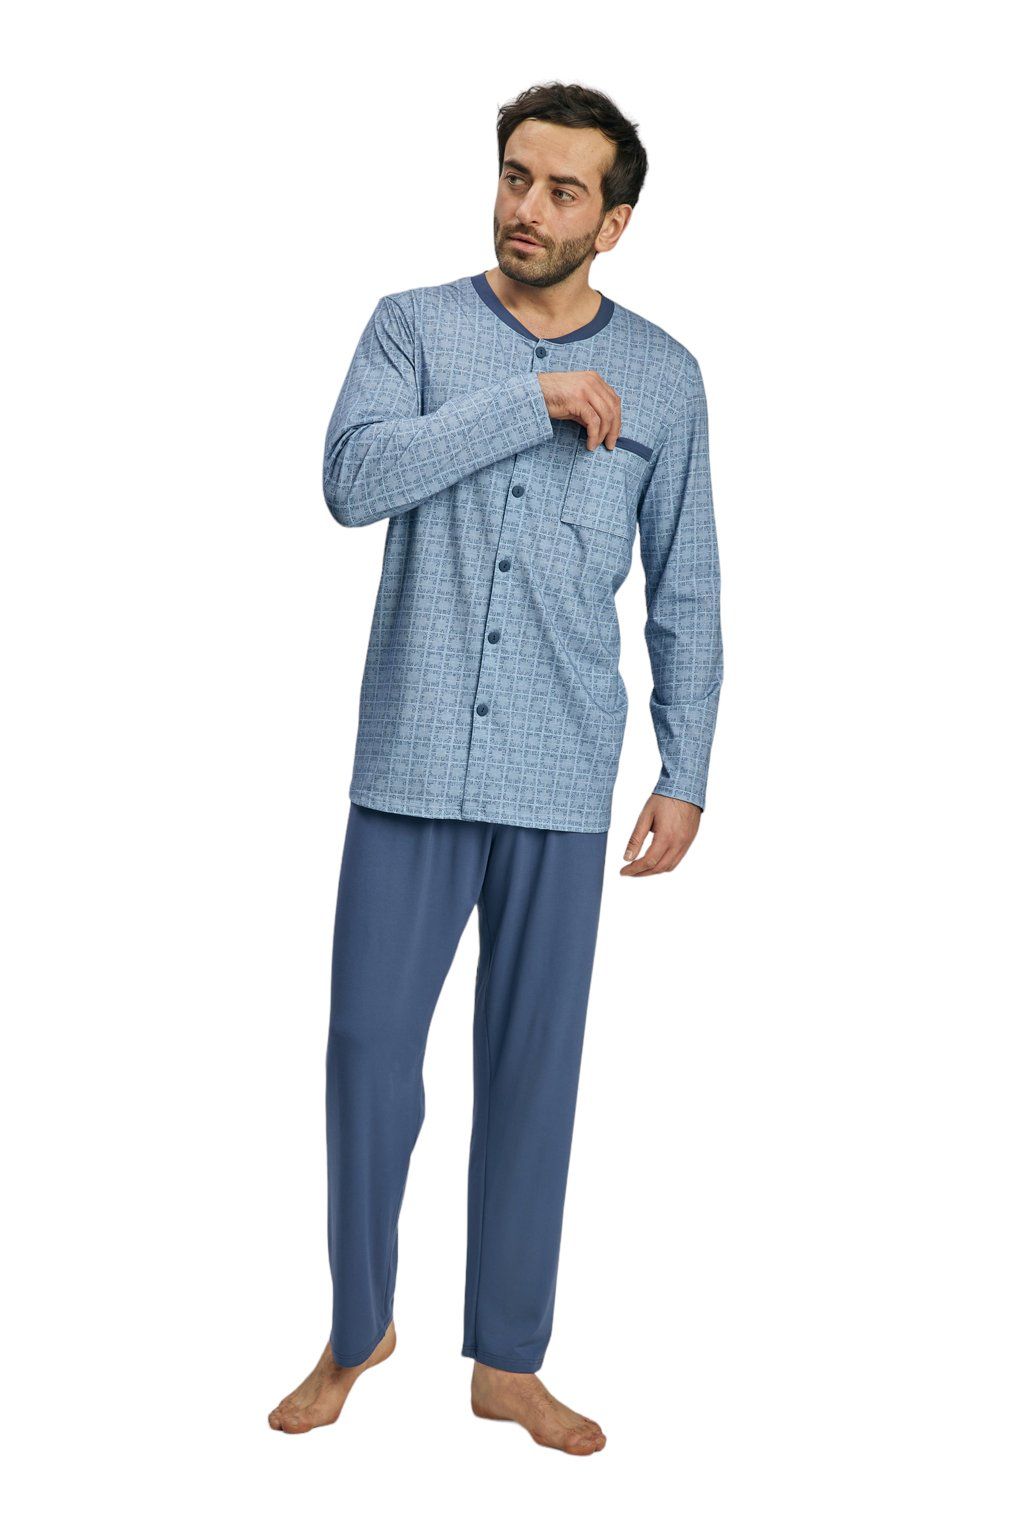 Pánské pyžamo s dlouhým rukávem, 204140 416, modrá - Velikost XL Wadima